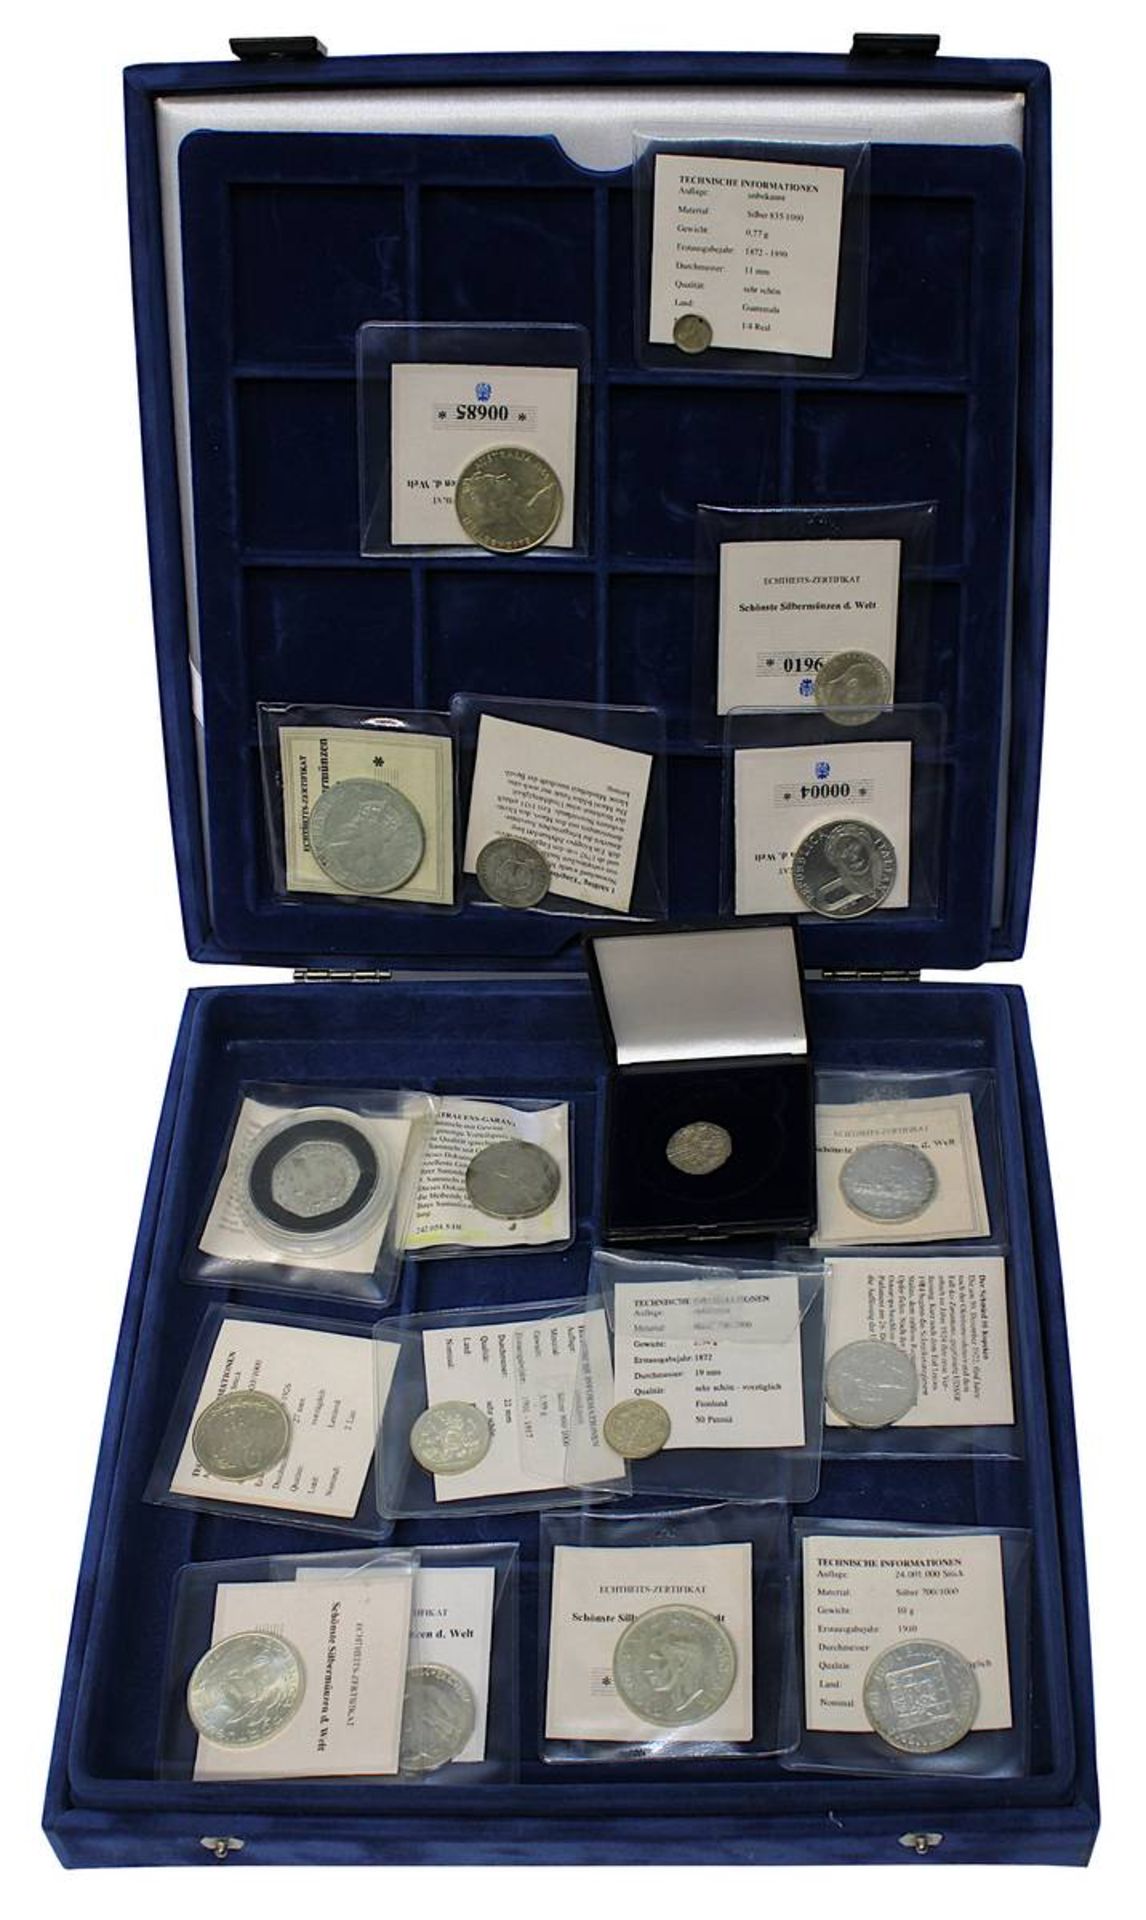 Sammlung von 18 Silbermünzen aus aller Welt, Erhaltung meist sehr schön bis vorzüglich u.a.: 20